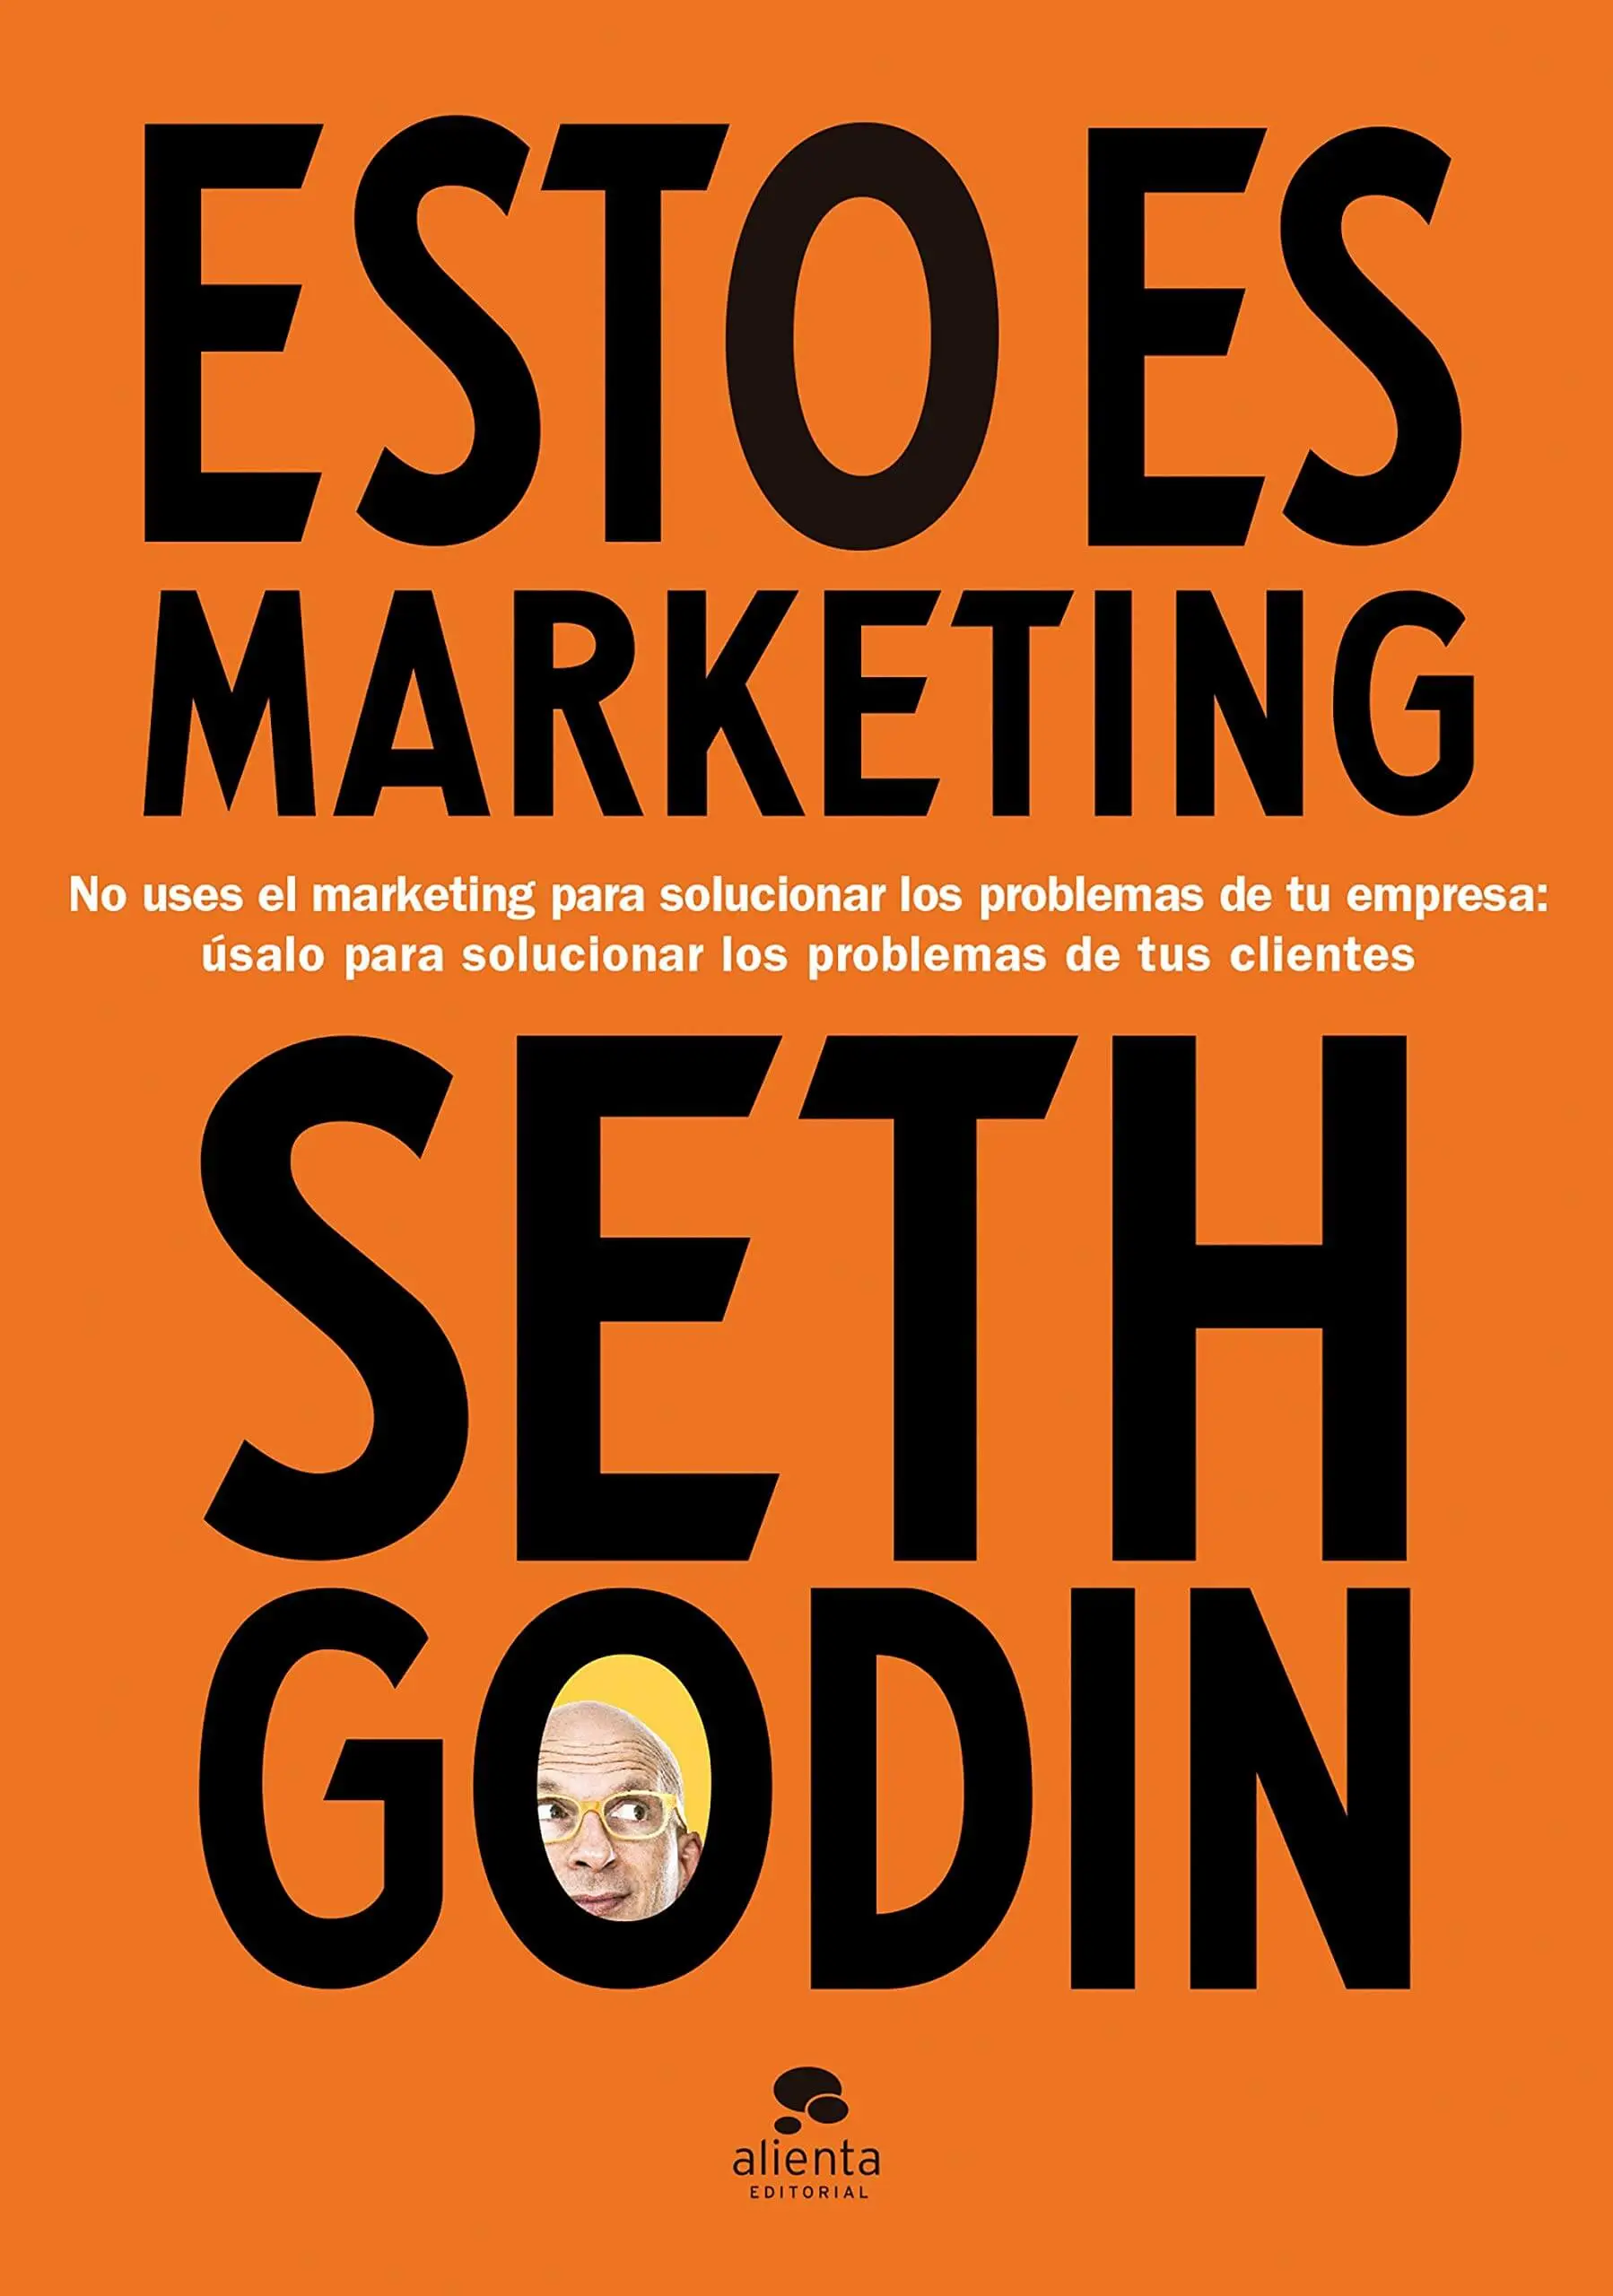 Carátula del libro "Esto es marketing" de Seth Godin